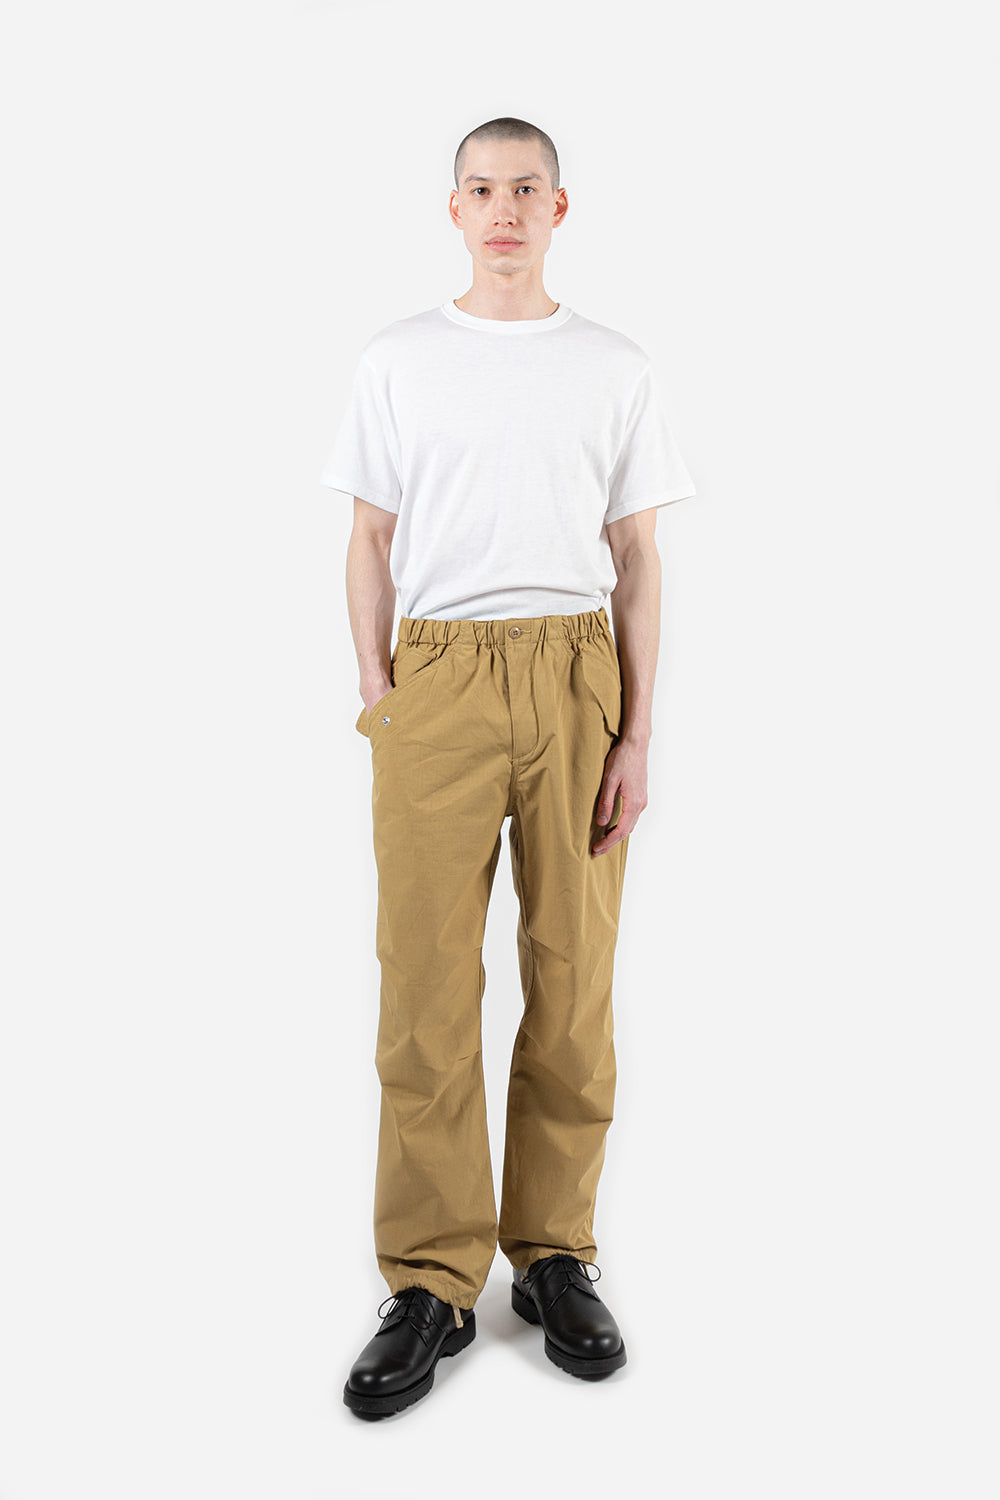 goldwin-wide-easy-wind-pants-beige